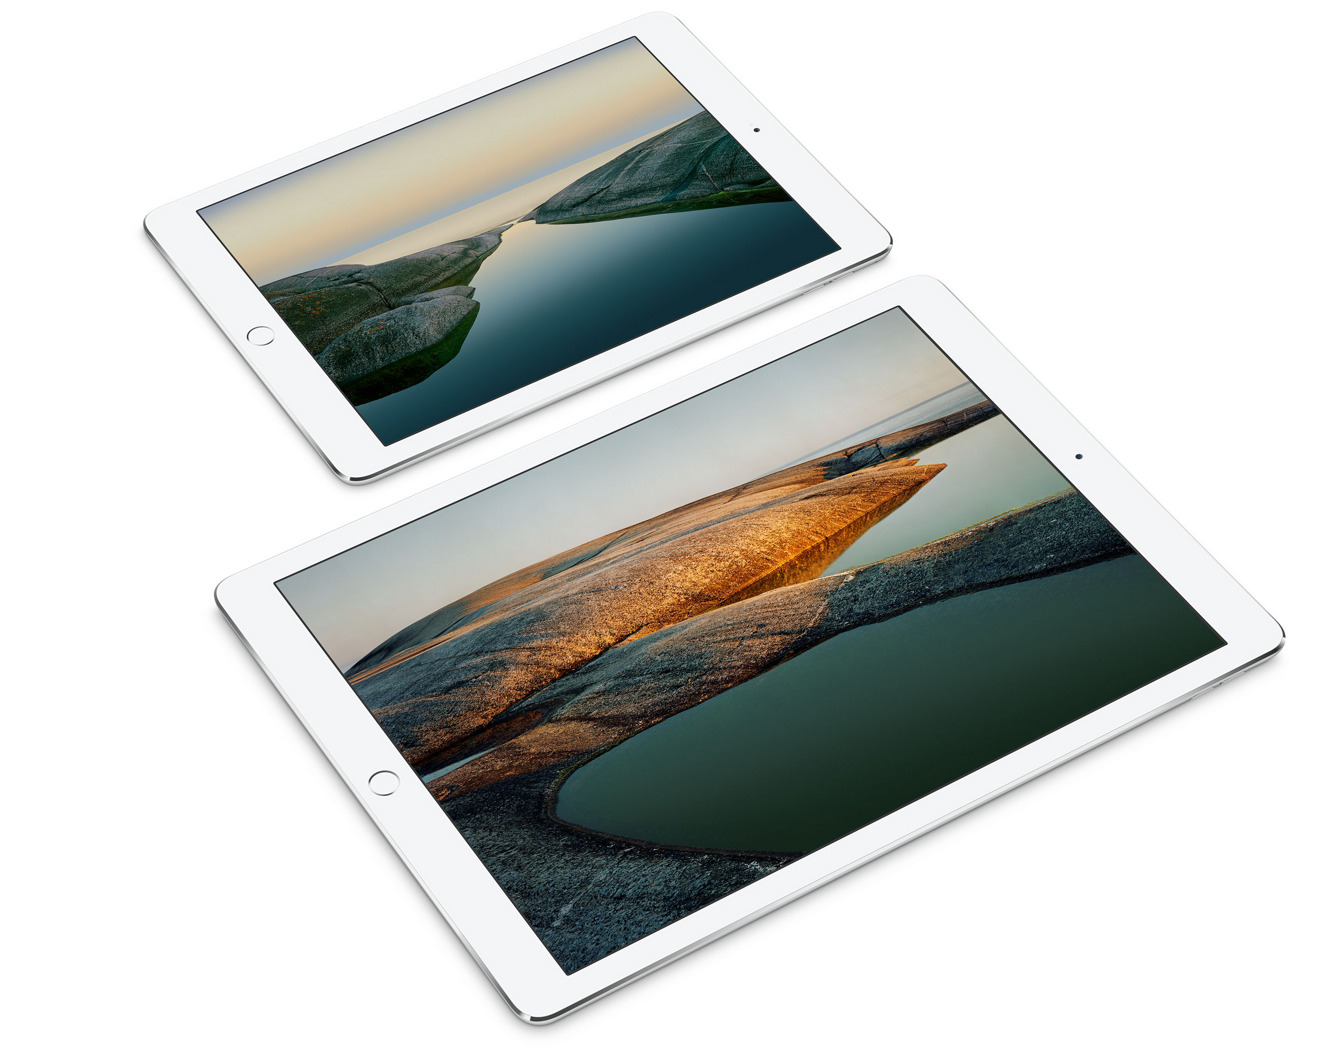 Apple iPad Pro bargains